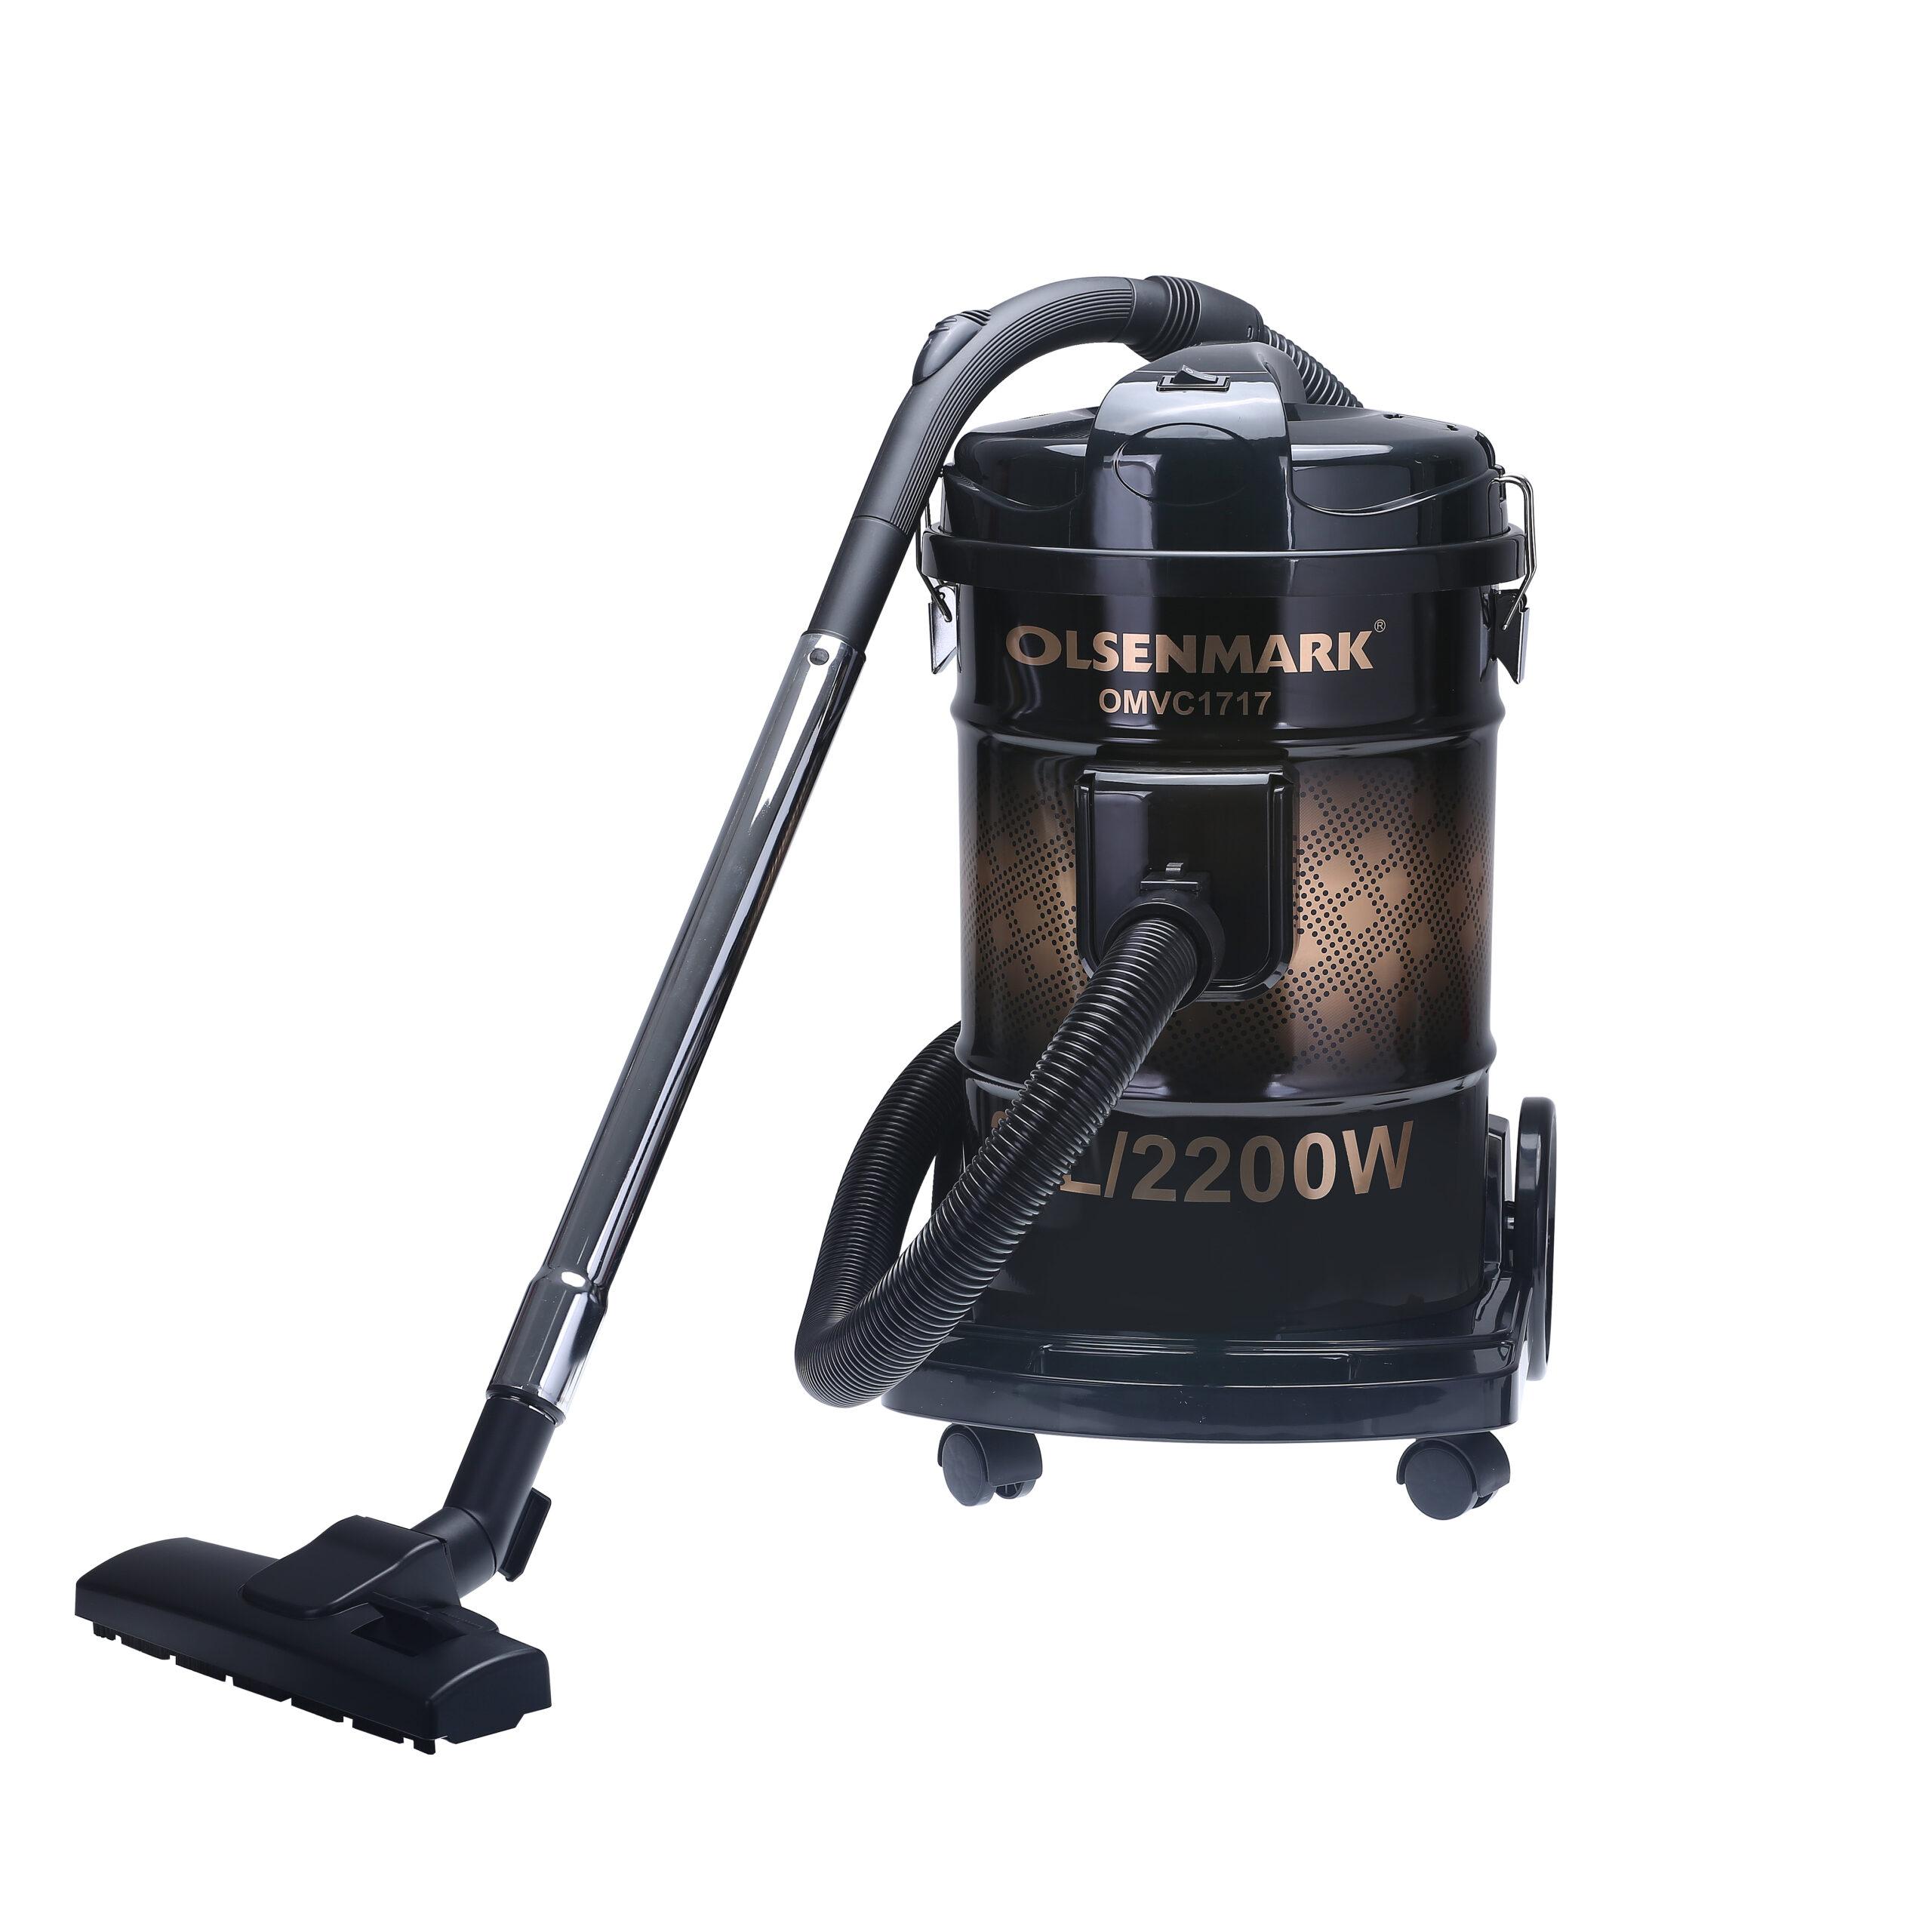 مكنسة كهربائية 24 لتر و 2200 وات Olsenmark Drum Vacuum Cleaner